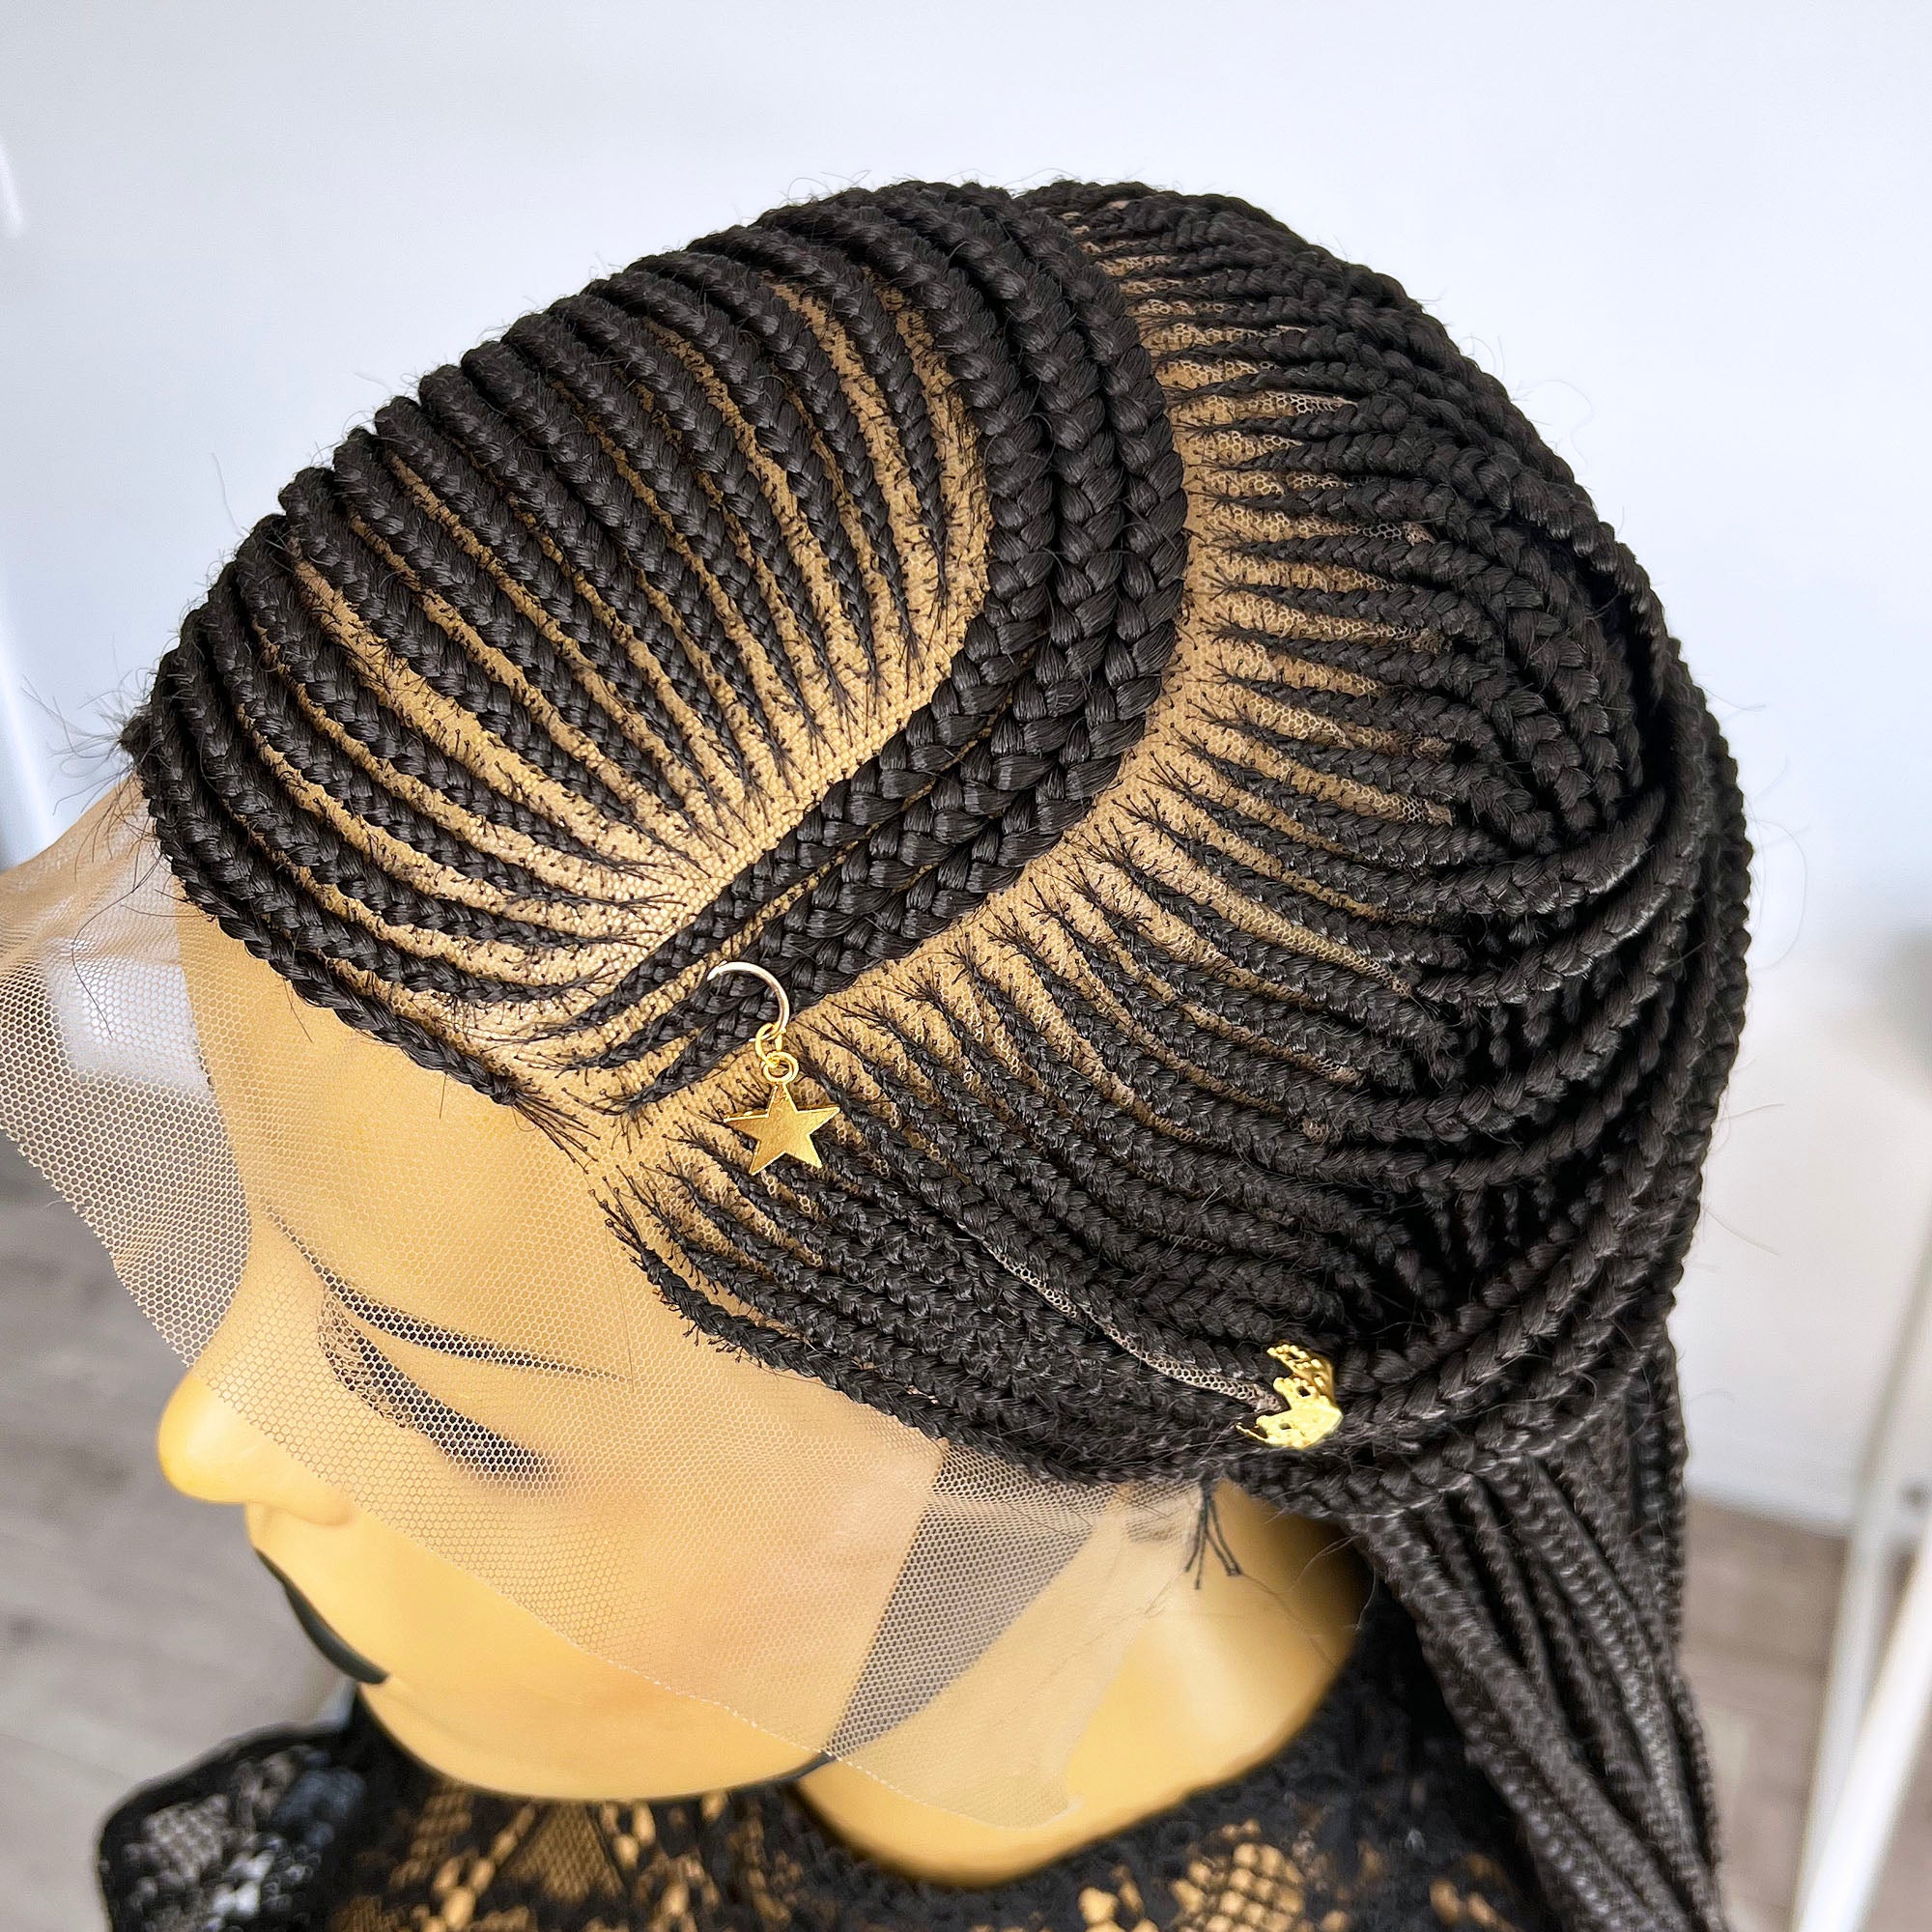 Cornrow Braids - Harlem To Harare | Natural hair stylists, Braided cornrow  hairstyles, Cornrows natural hair